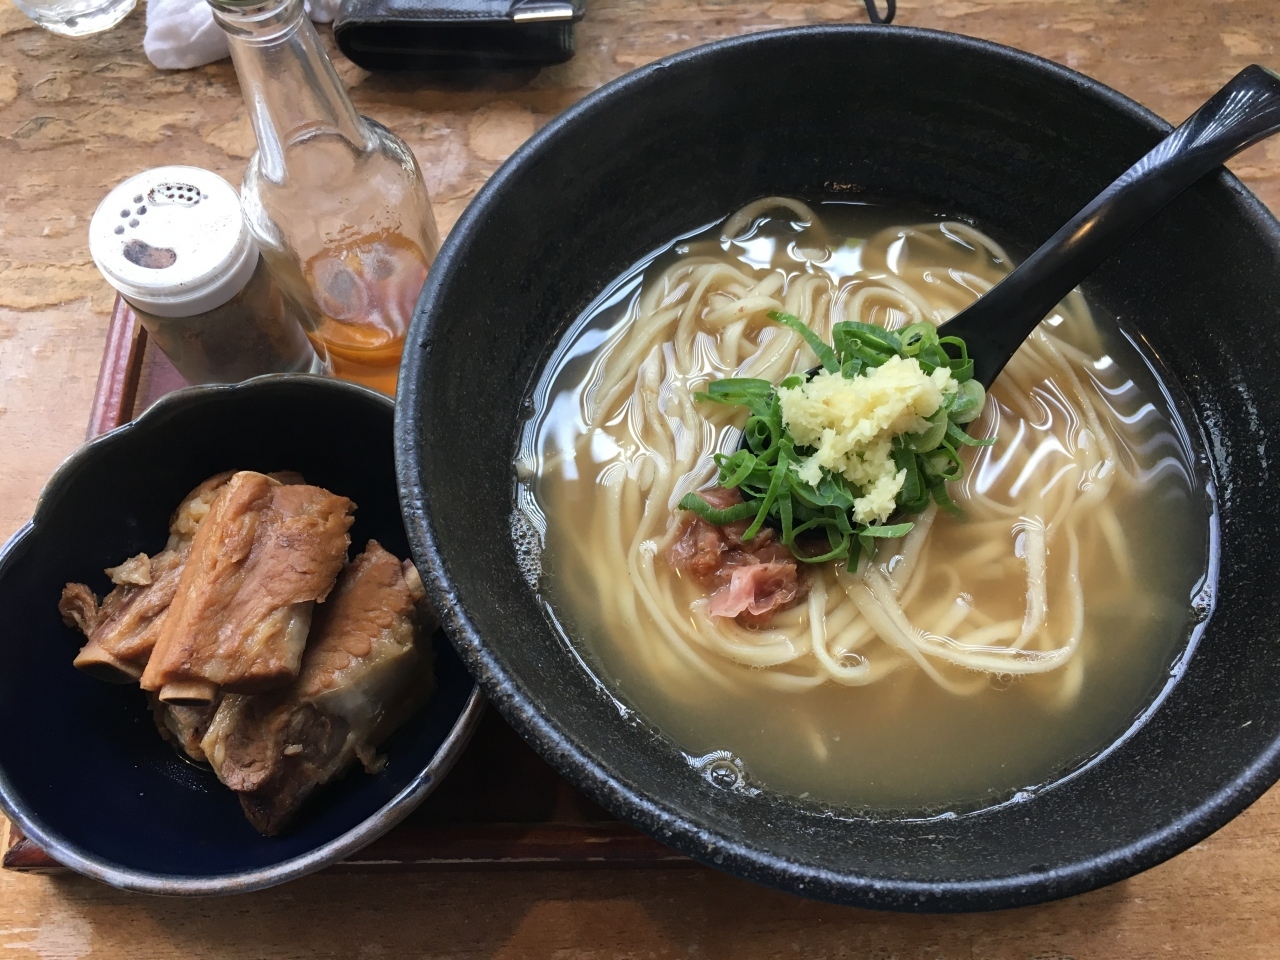 太麺と柔らかいロース豚、さっぱりとしたスープの相性が抜群でした。

路地裏にある隠れ家的な、沖縄そばの名店のようでした。
